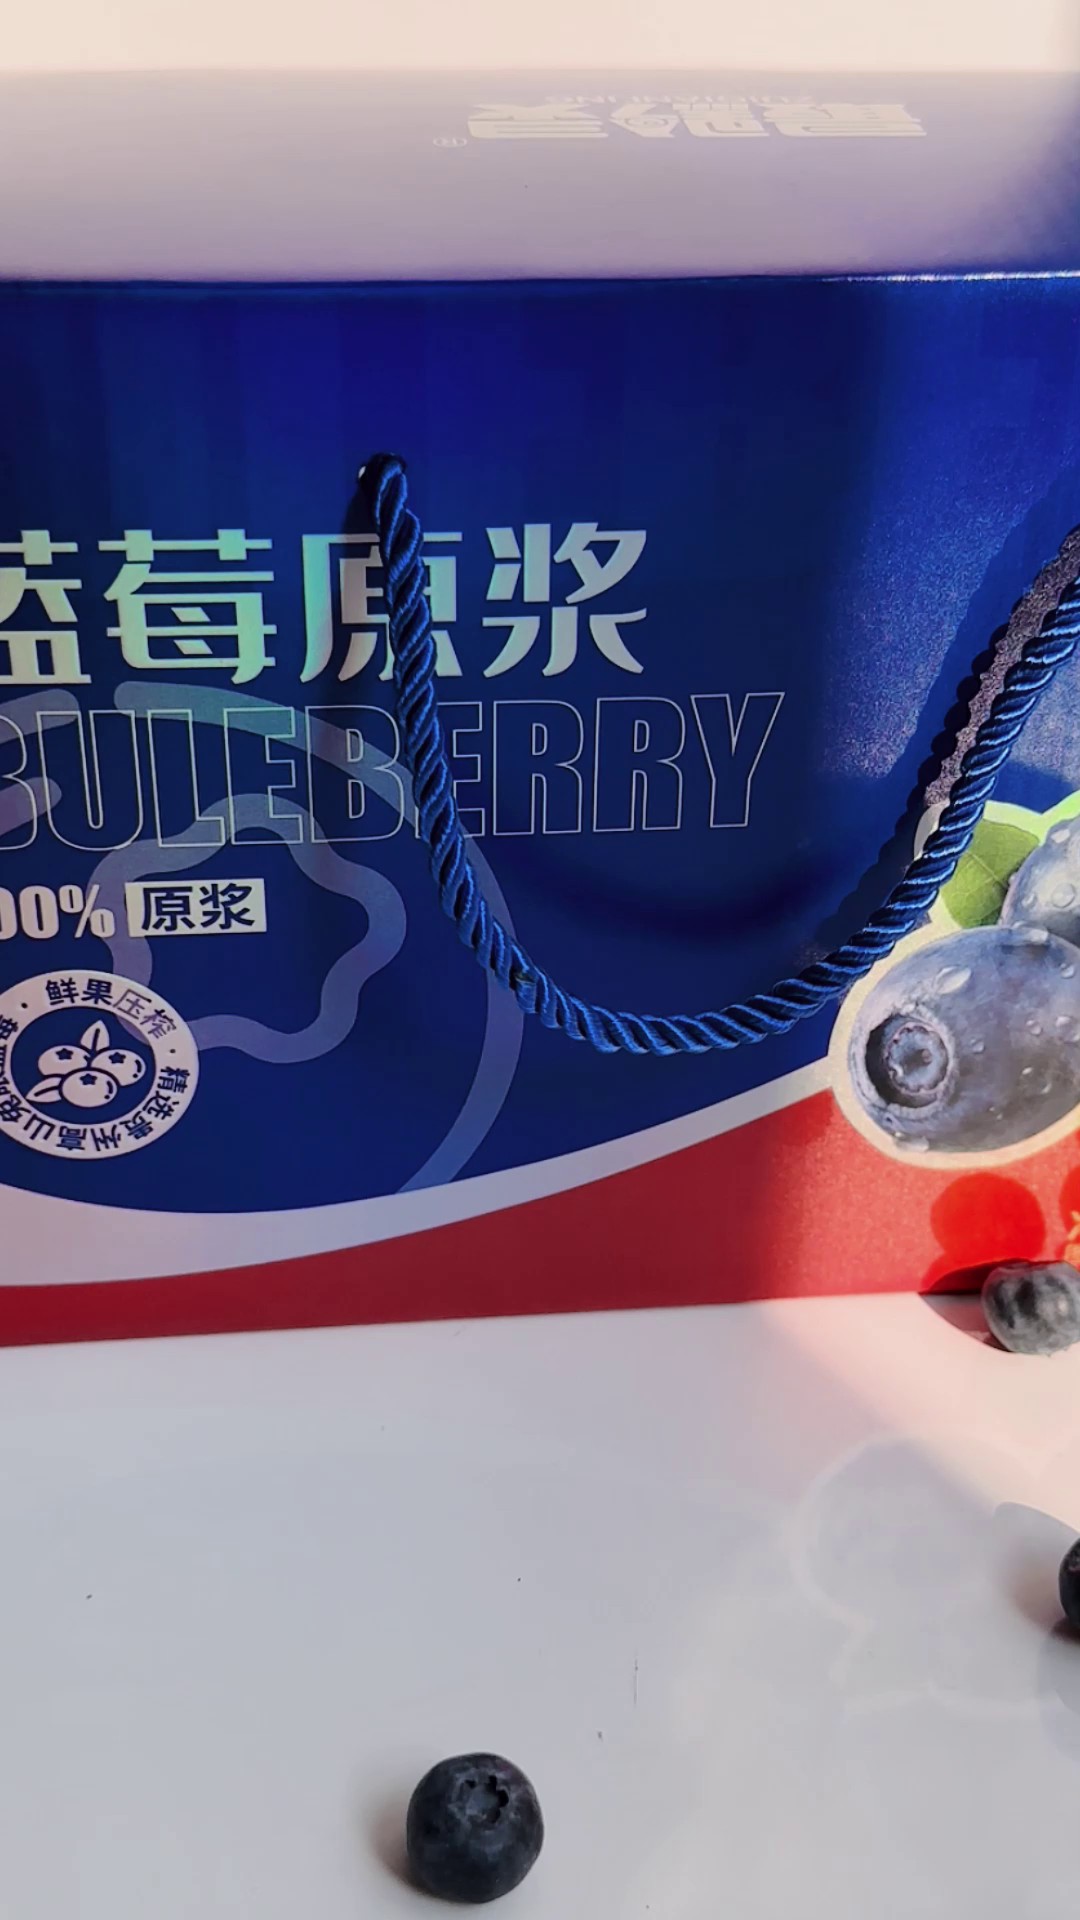 上海蓝莓原浆专卖店,蓝莓原浆